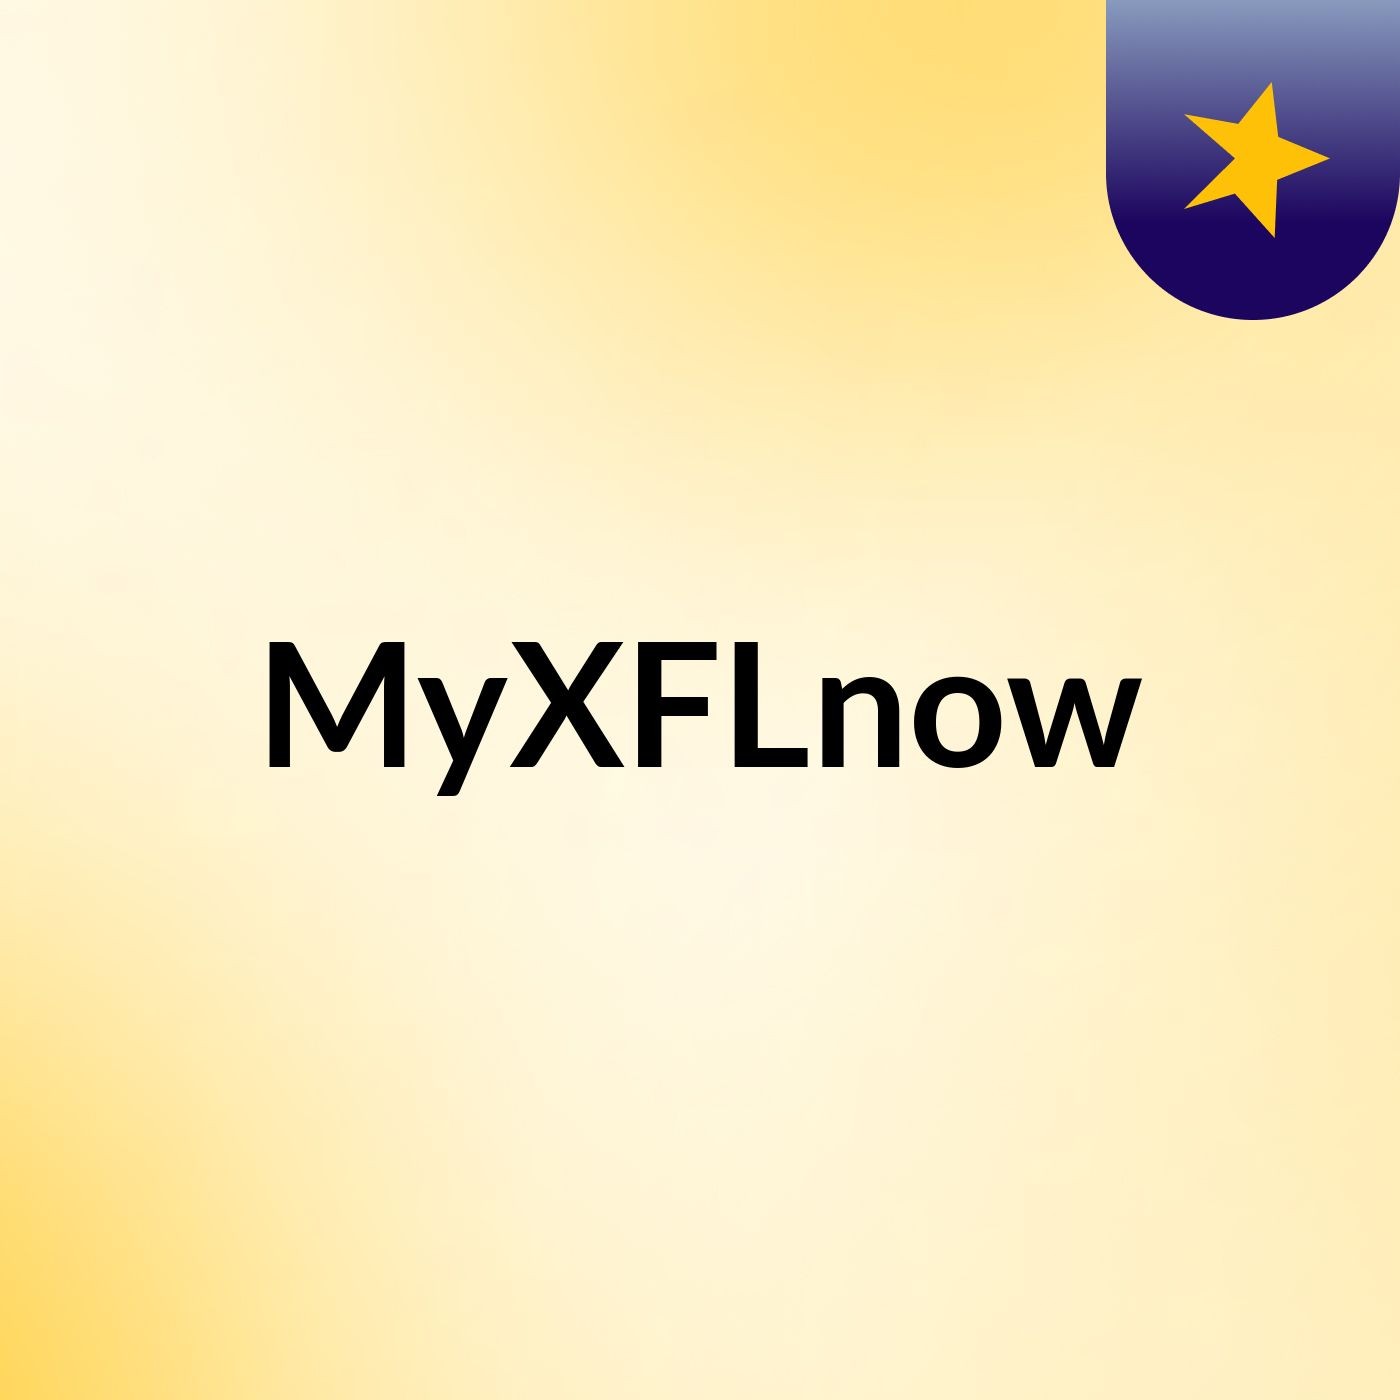 MyXFLnow